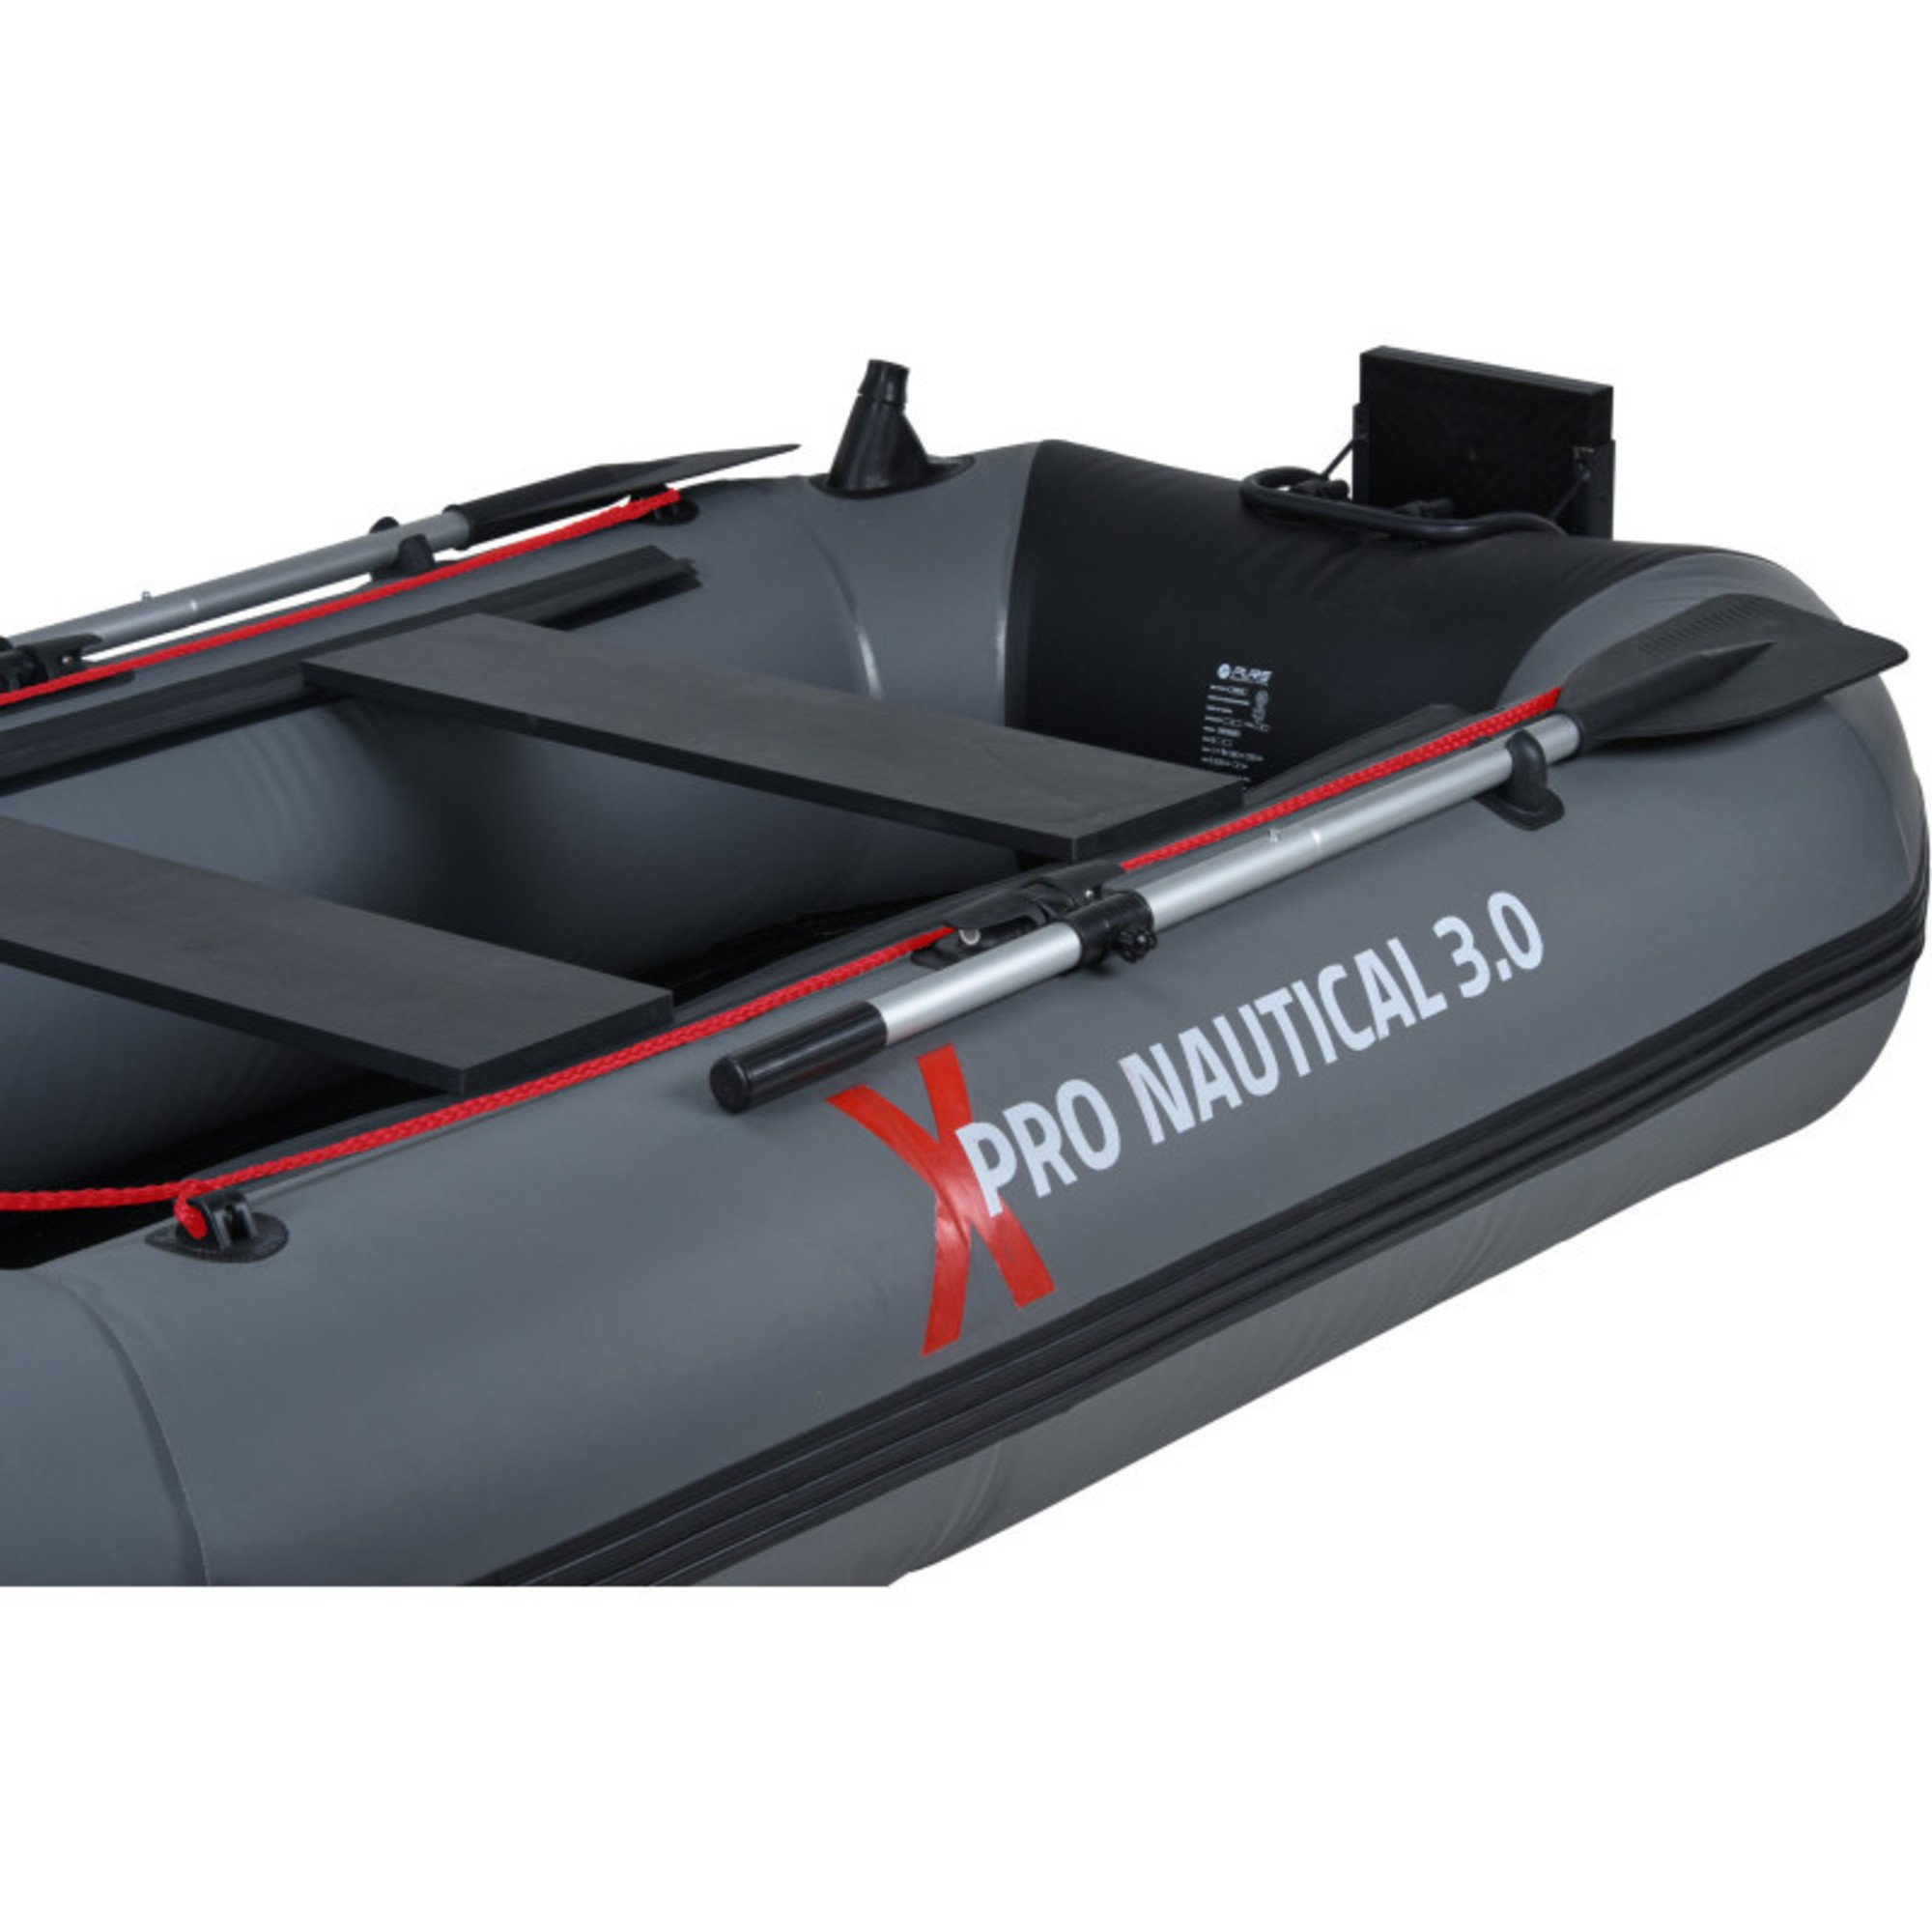 Aanpassen US dollar technisch Opblaasboot Vissersboot Xpro Nautical 3.0 - 3 tot 4 personen - 300x135 -  Sportamundo.com